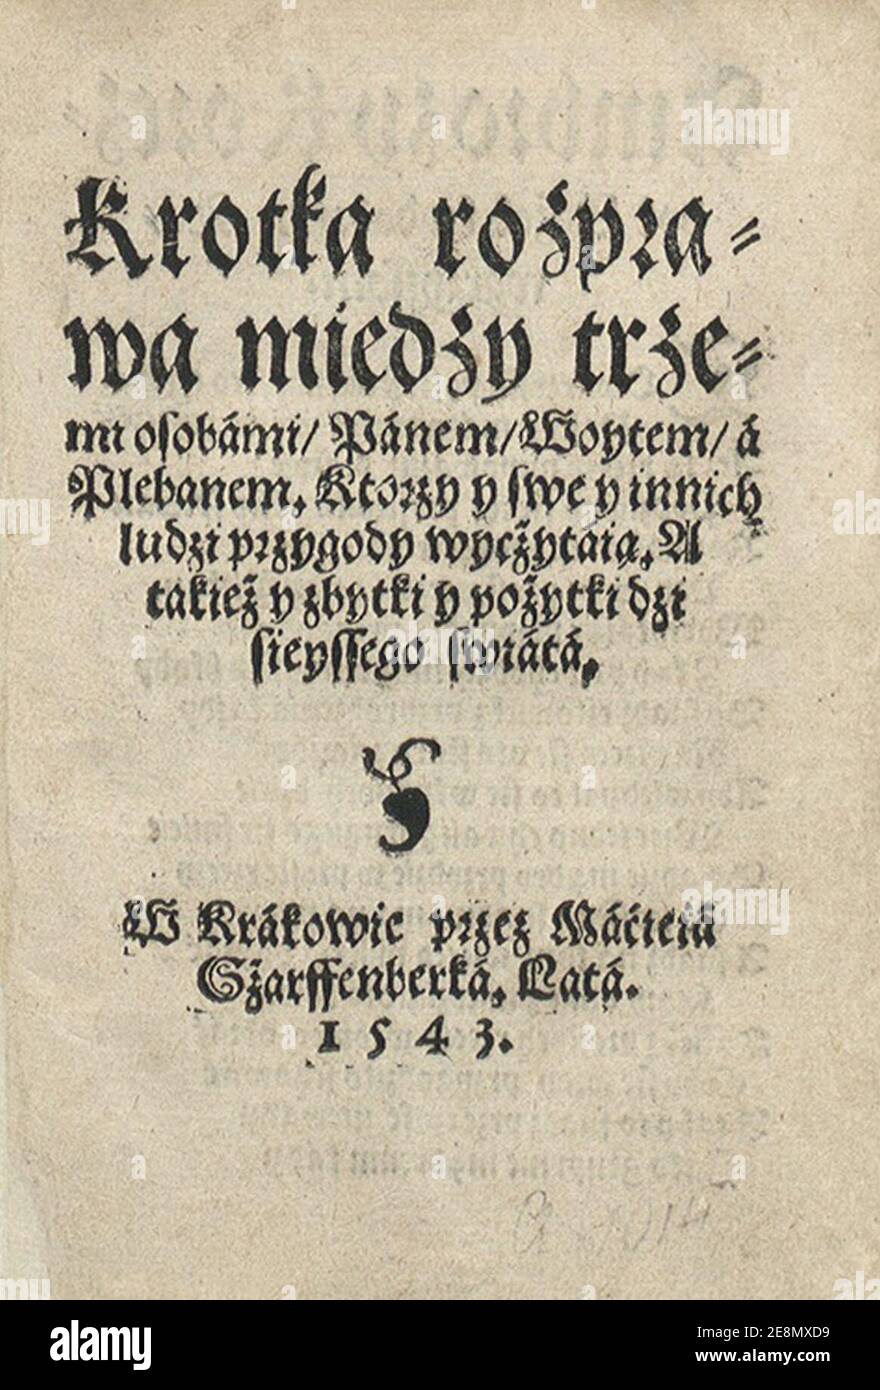 Mikołaj Rej - Krótka rozprawa 1543. Stock Photo